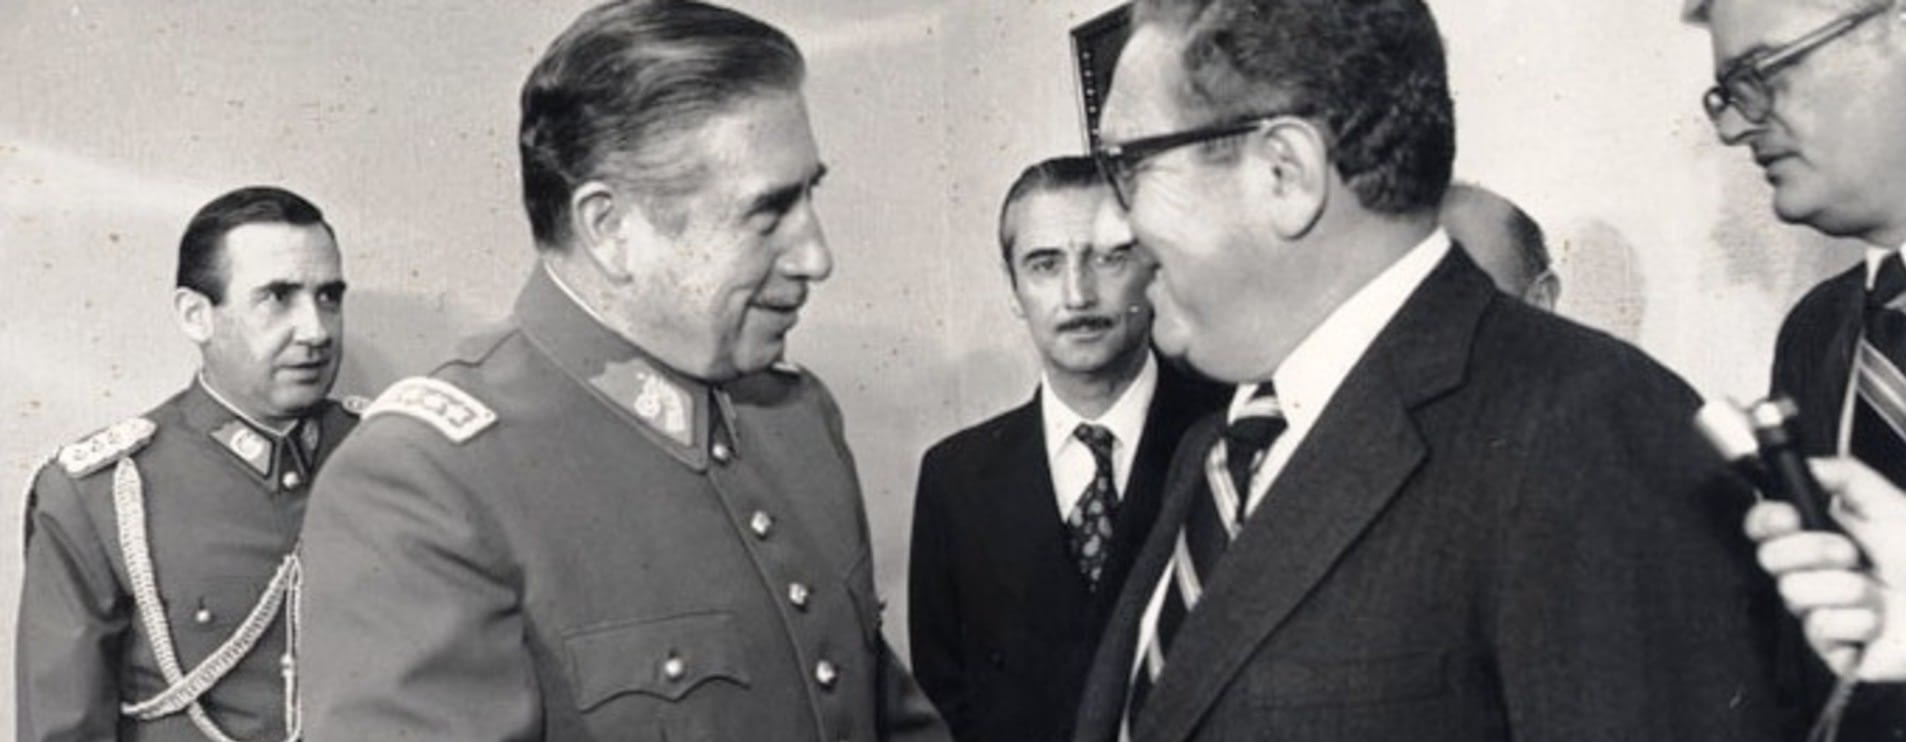 Augusto Pinochet meets Henry Kissinger